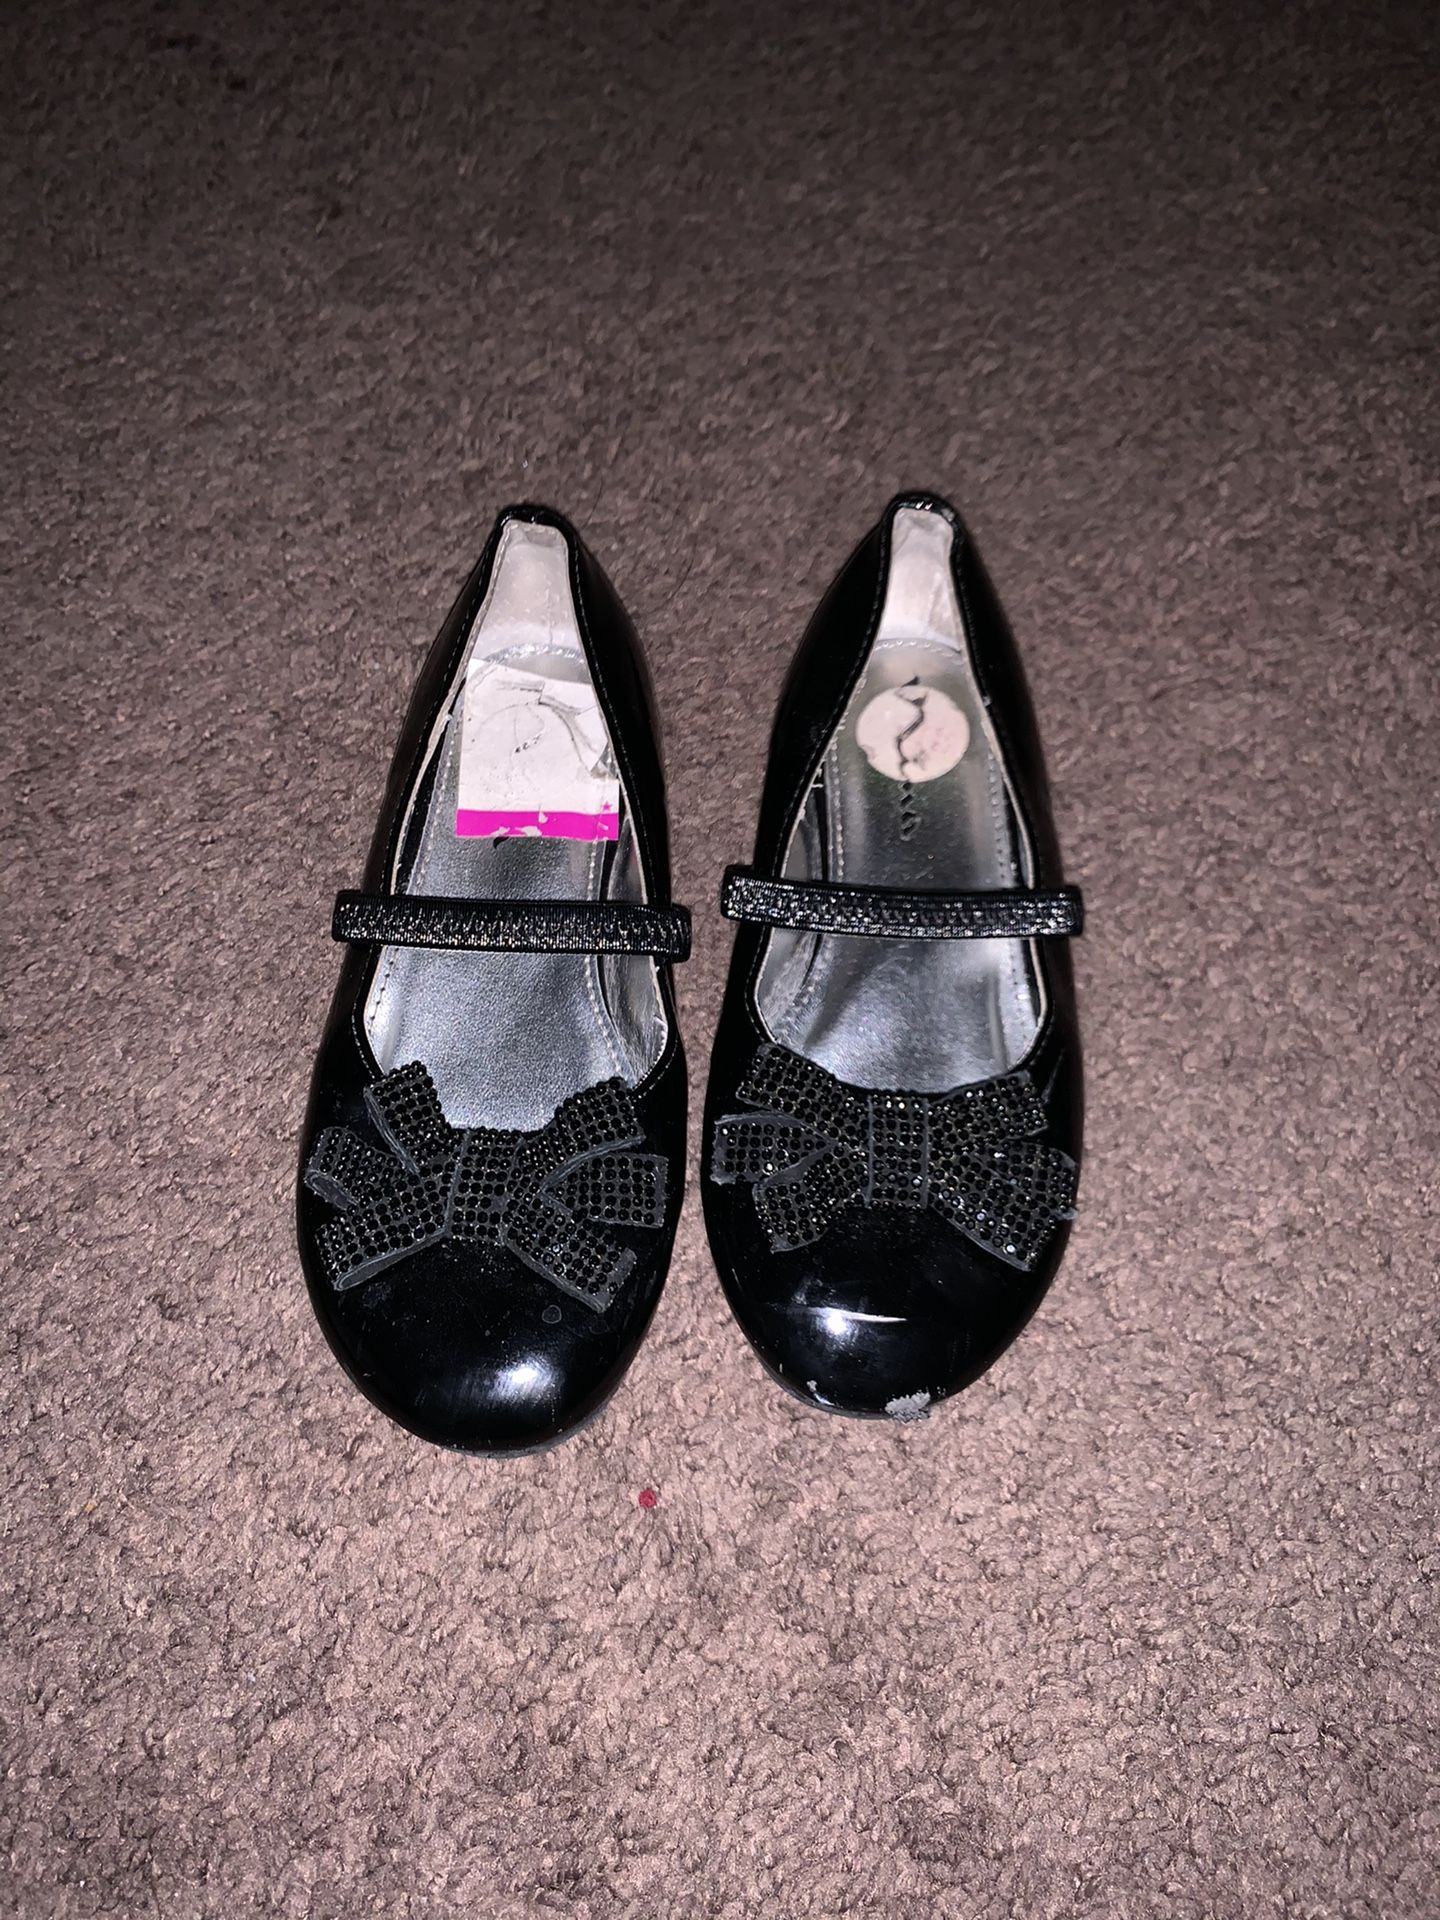 Girl shoes size 10 black colour